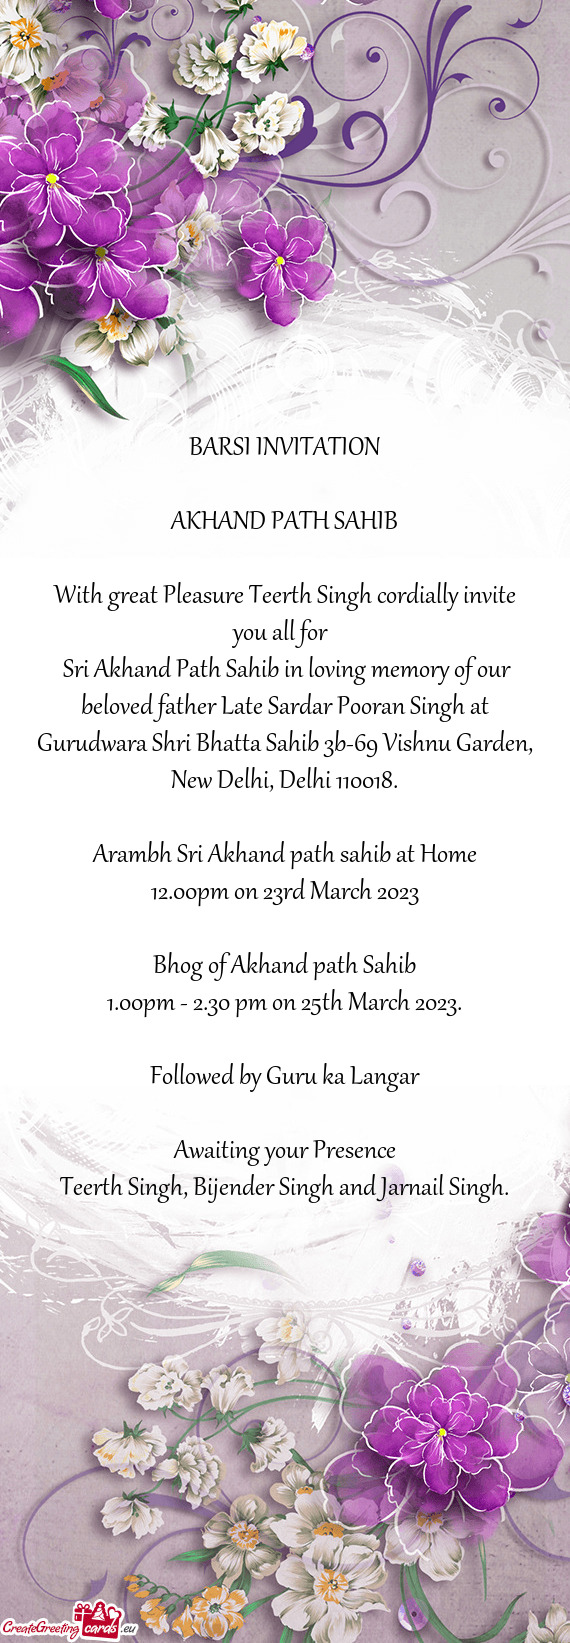 Sri Akhand Path Sahib in loving memory of our beloved father Late Sardar Pooran Singh at Gurudwara